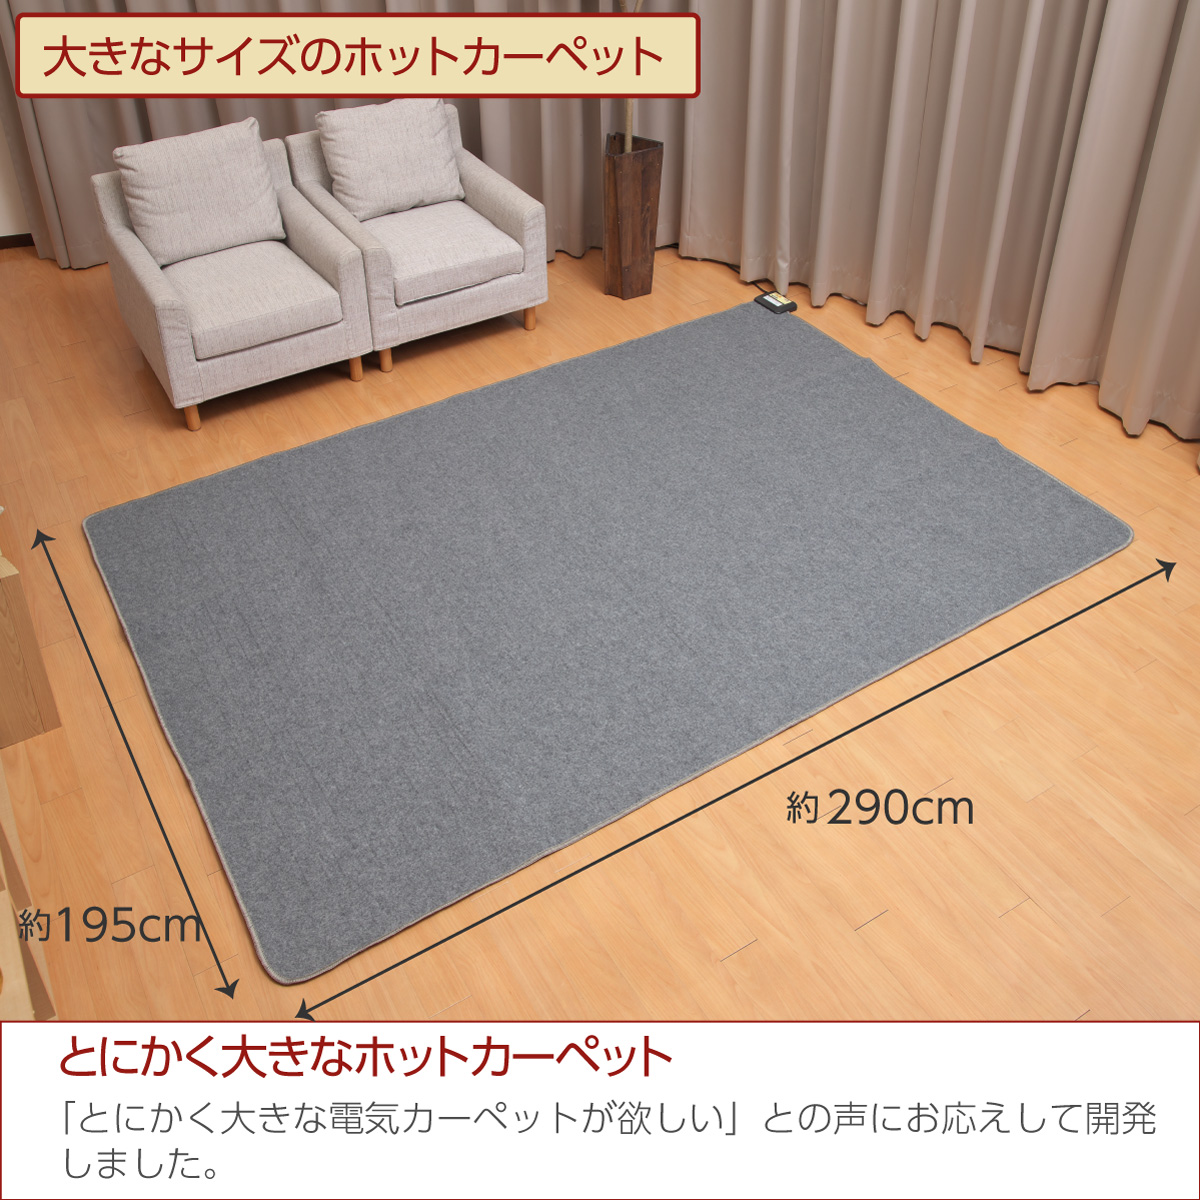 日本製 ホットカーペット 電気カーペット 4畳 290cm×195cm 暖房面切換 8時間OFF機能 コンパクト収納 スライド温度調節 JPU401H  ライフジョイ